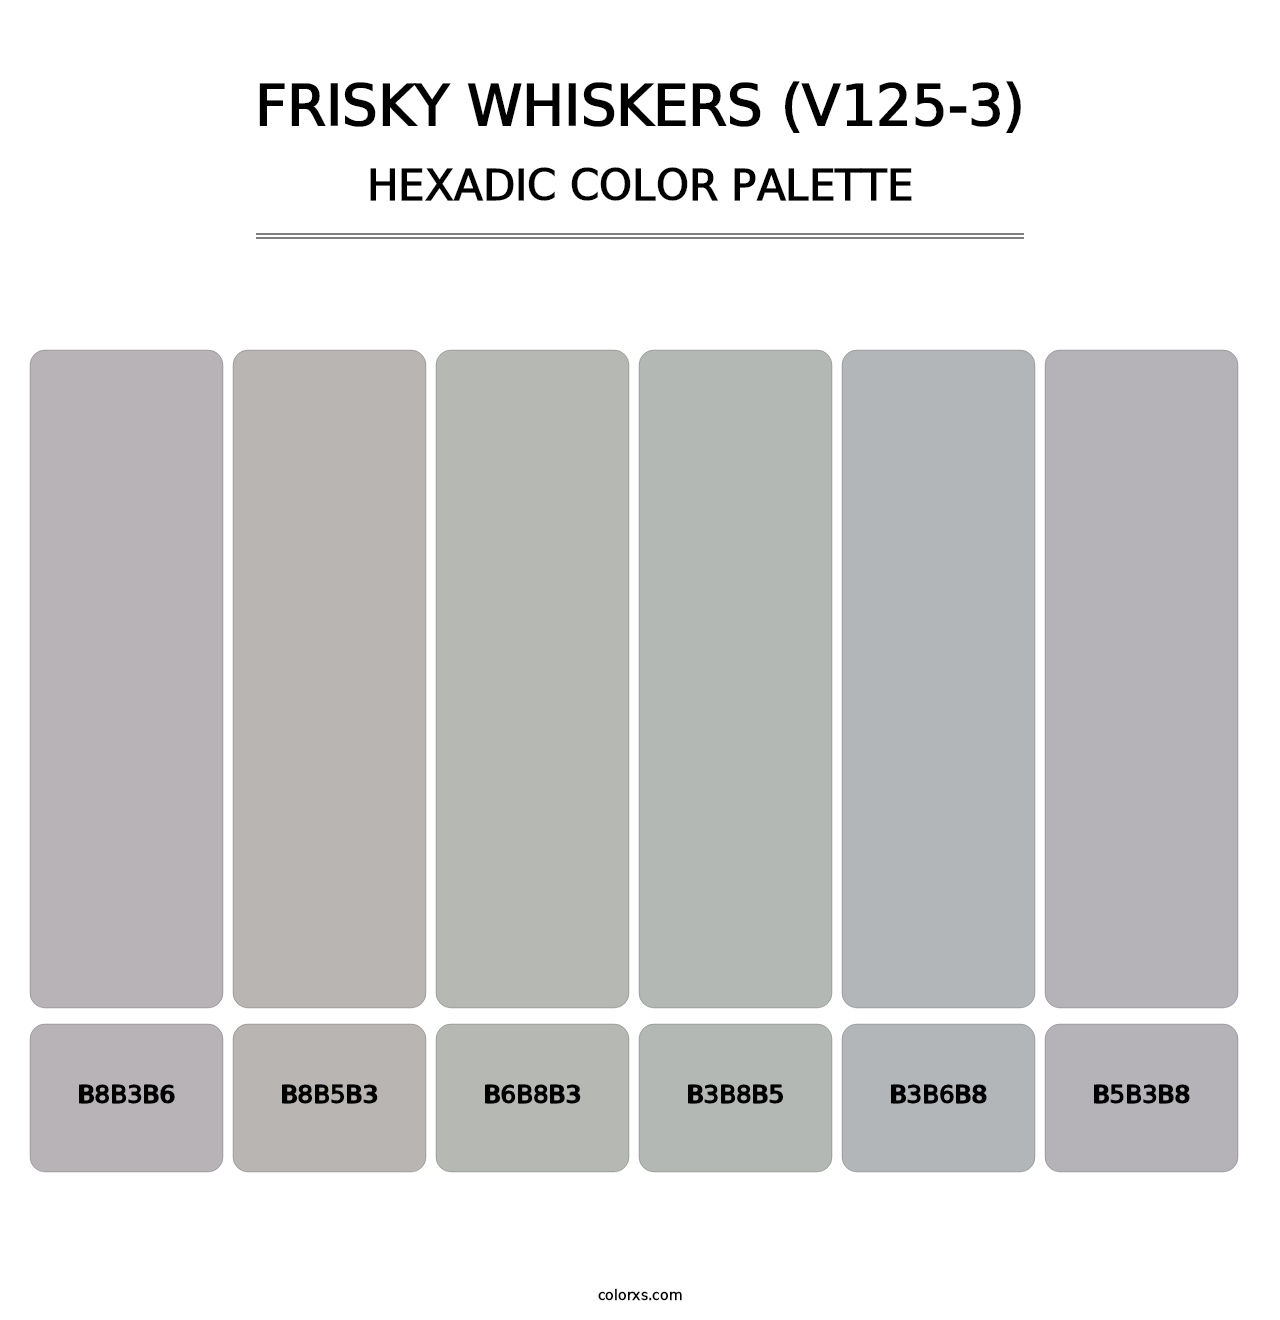 Frisky Whiskers (V125-3) - Hexadic Color Palette